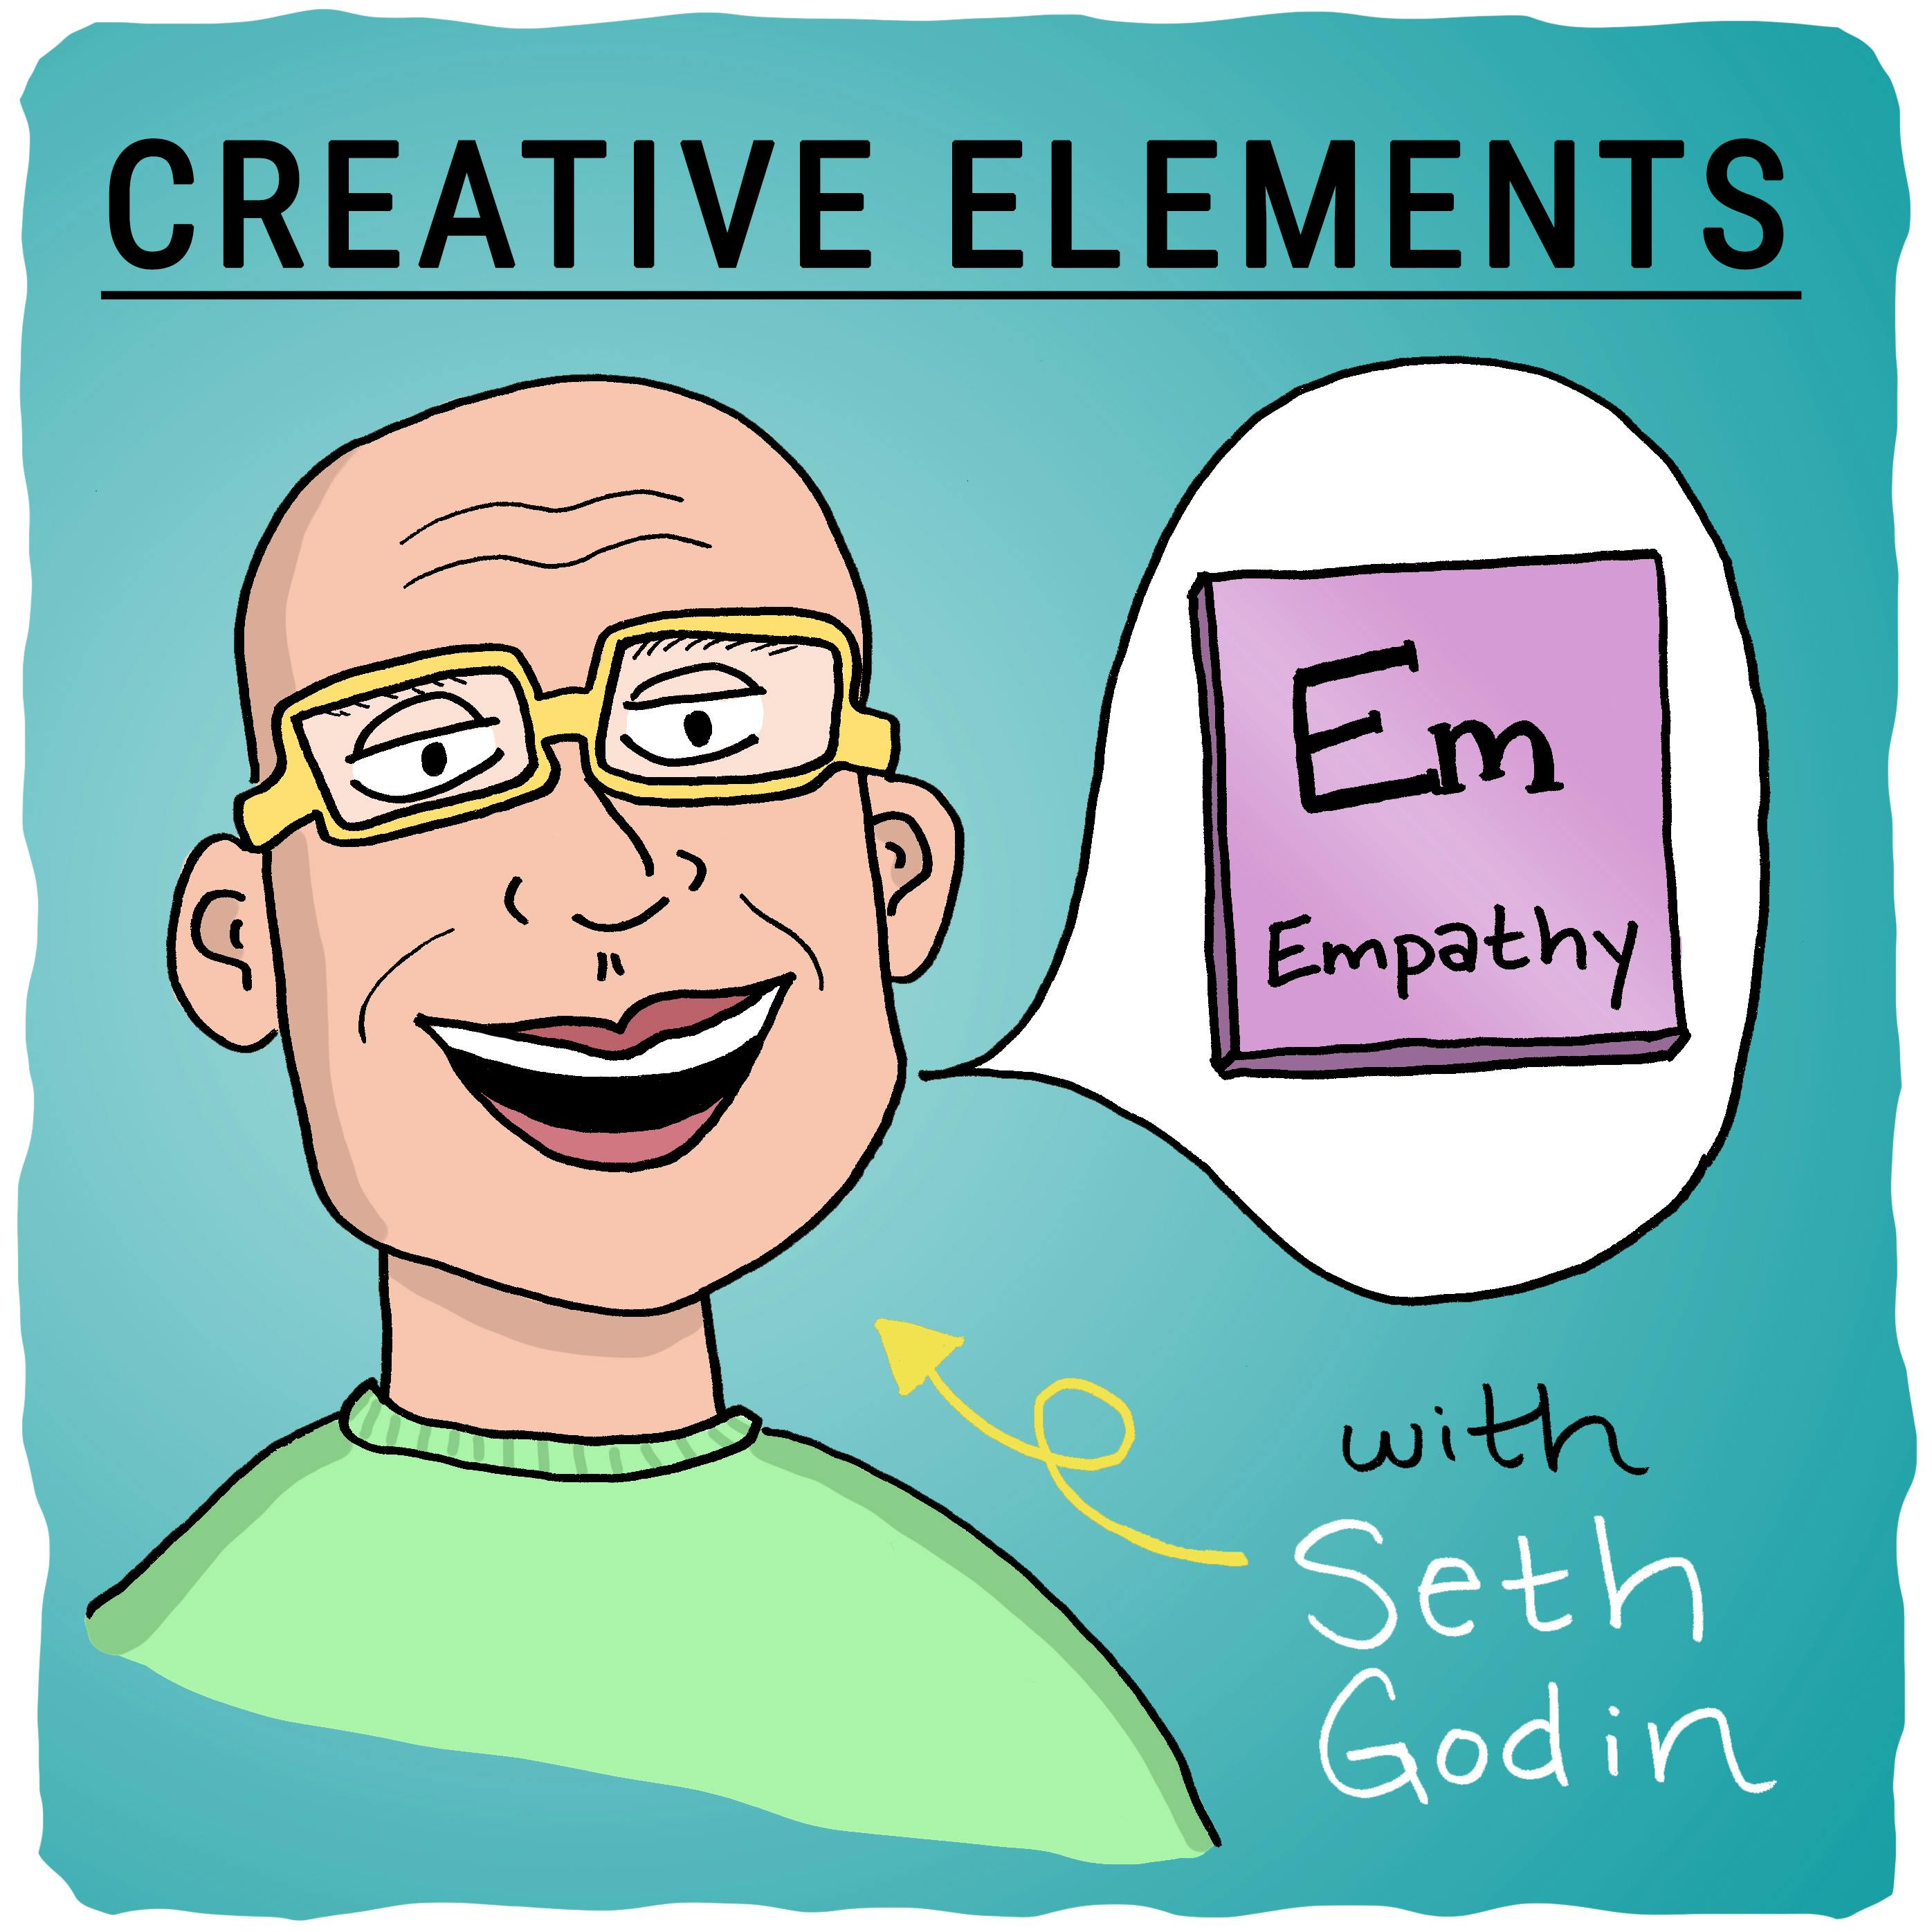 #1: Seth Godin [Empathy] Image